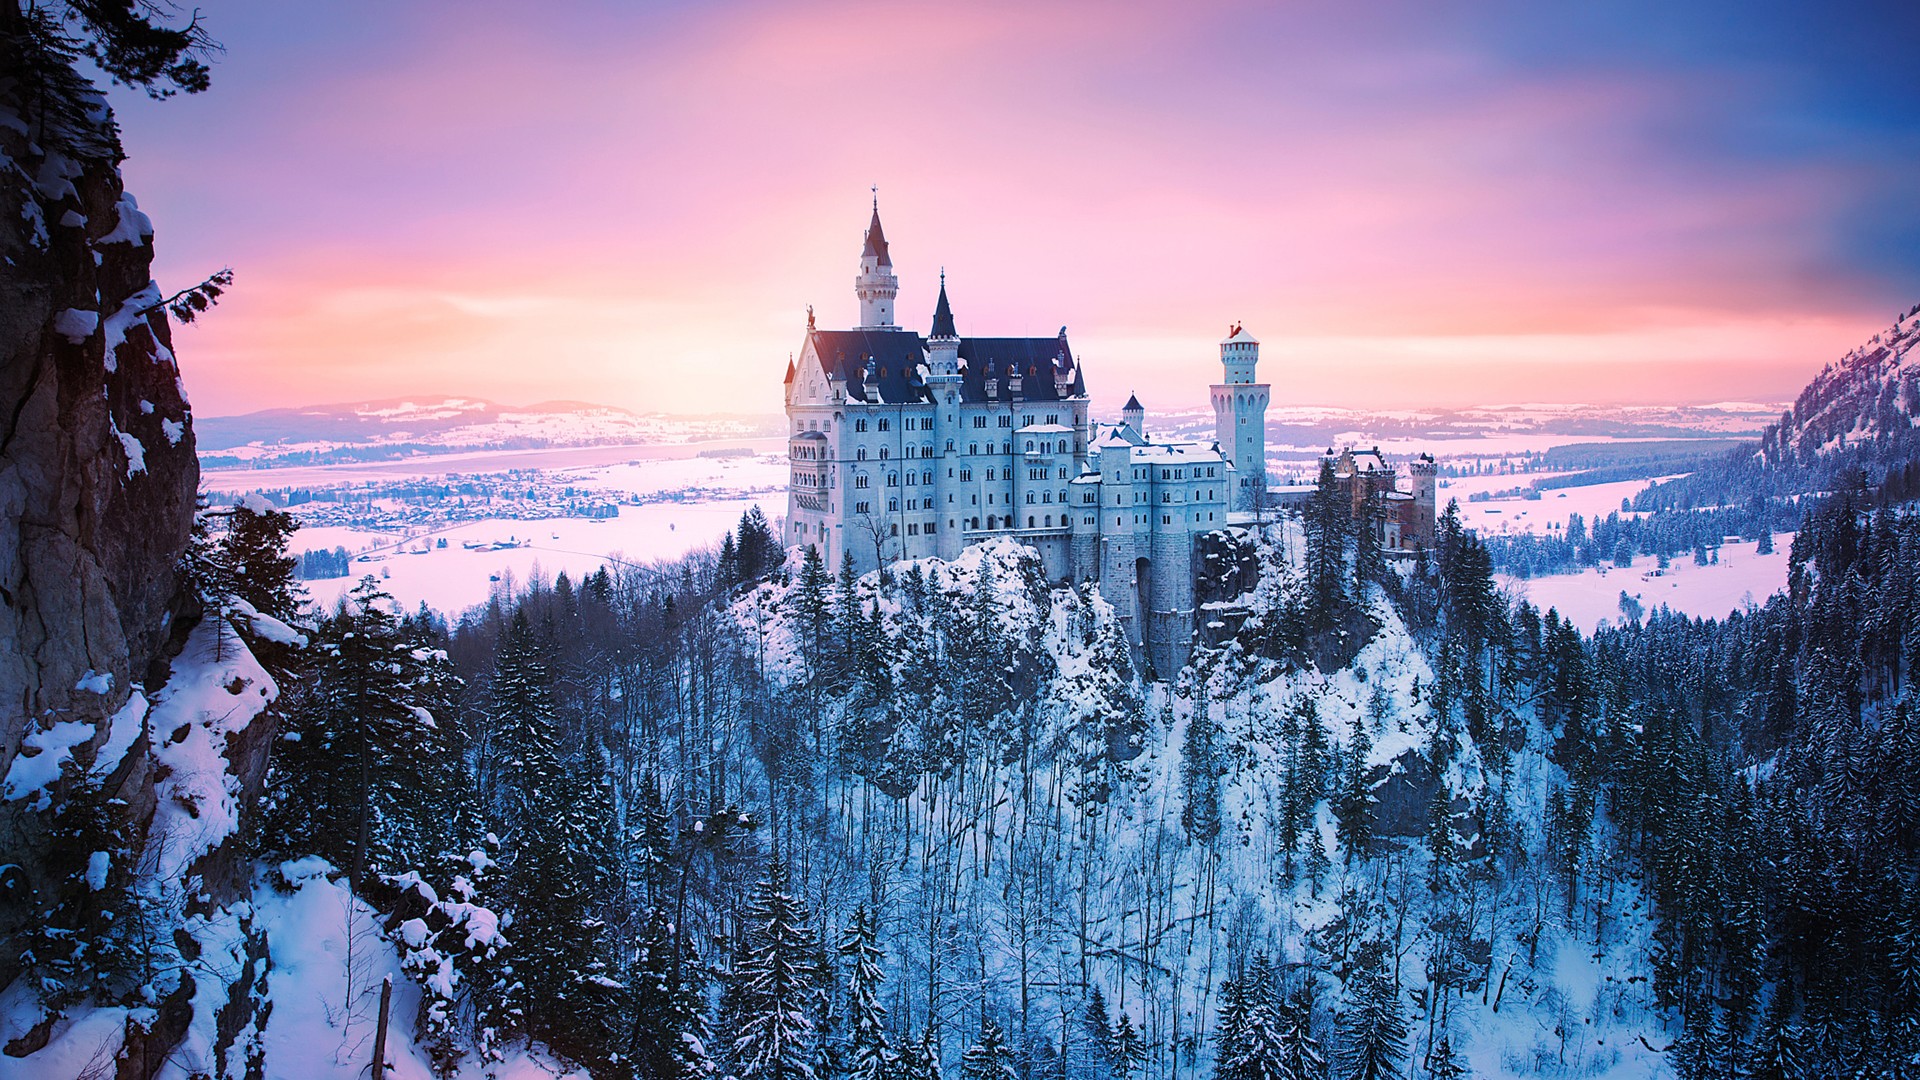 ノイシュヴァンシュタイン城の壁紙,自然,自然の風景,空,冬,城